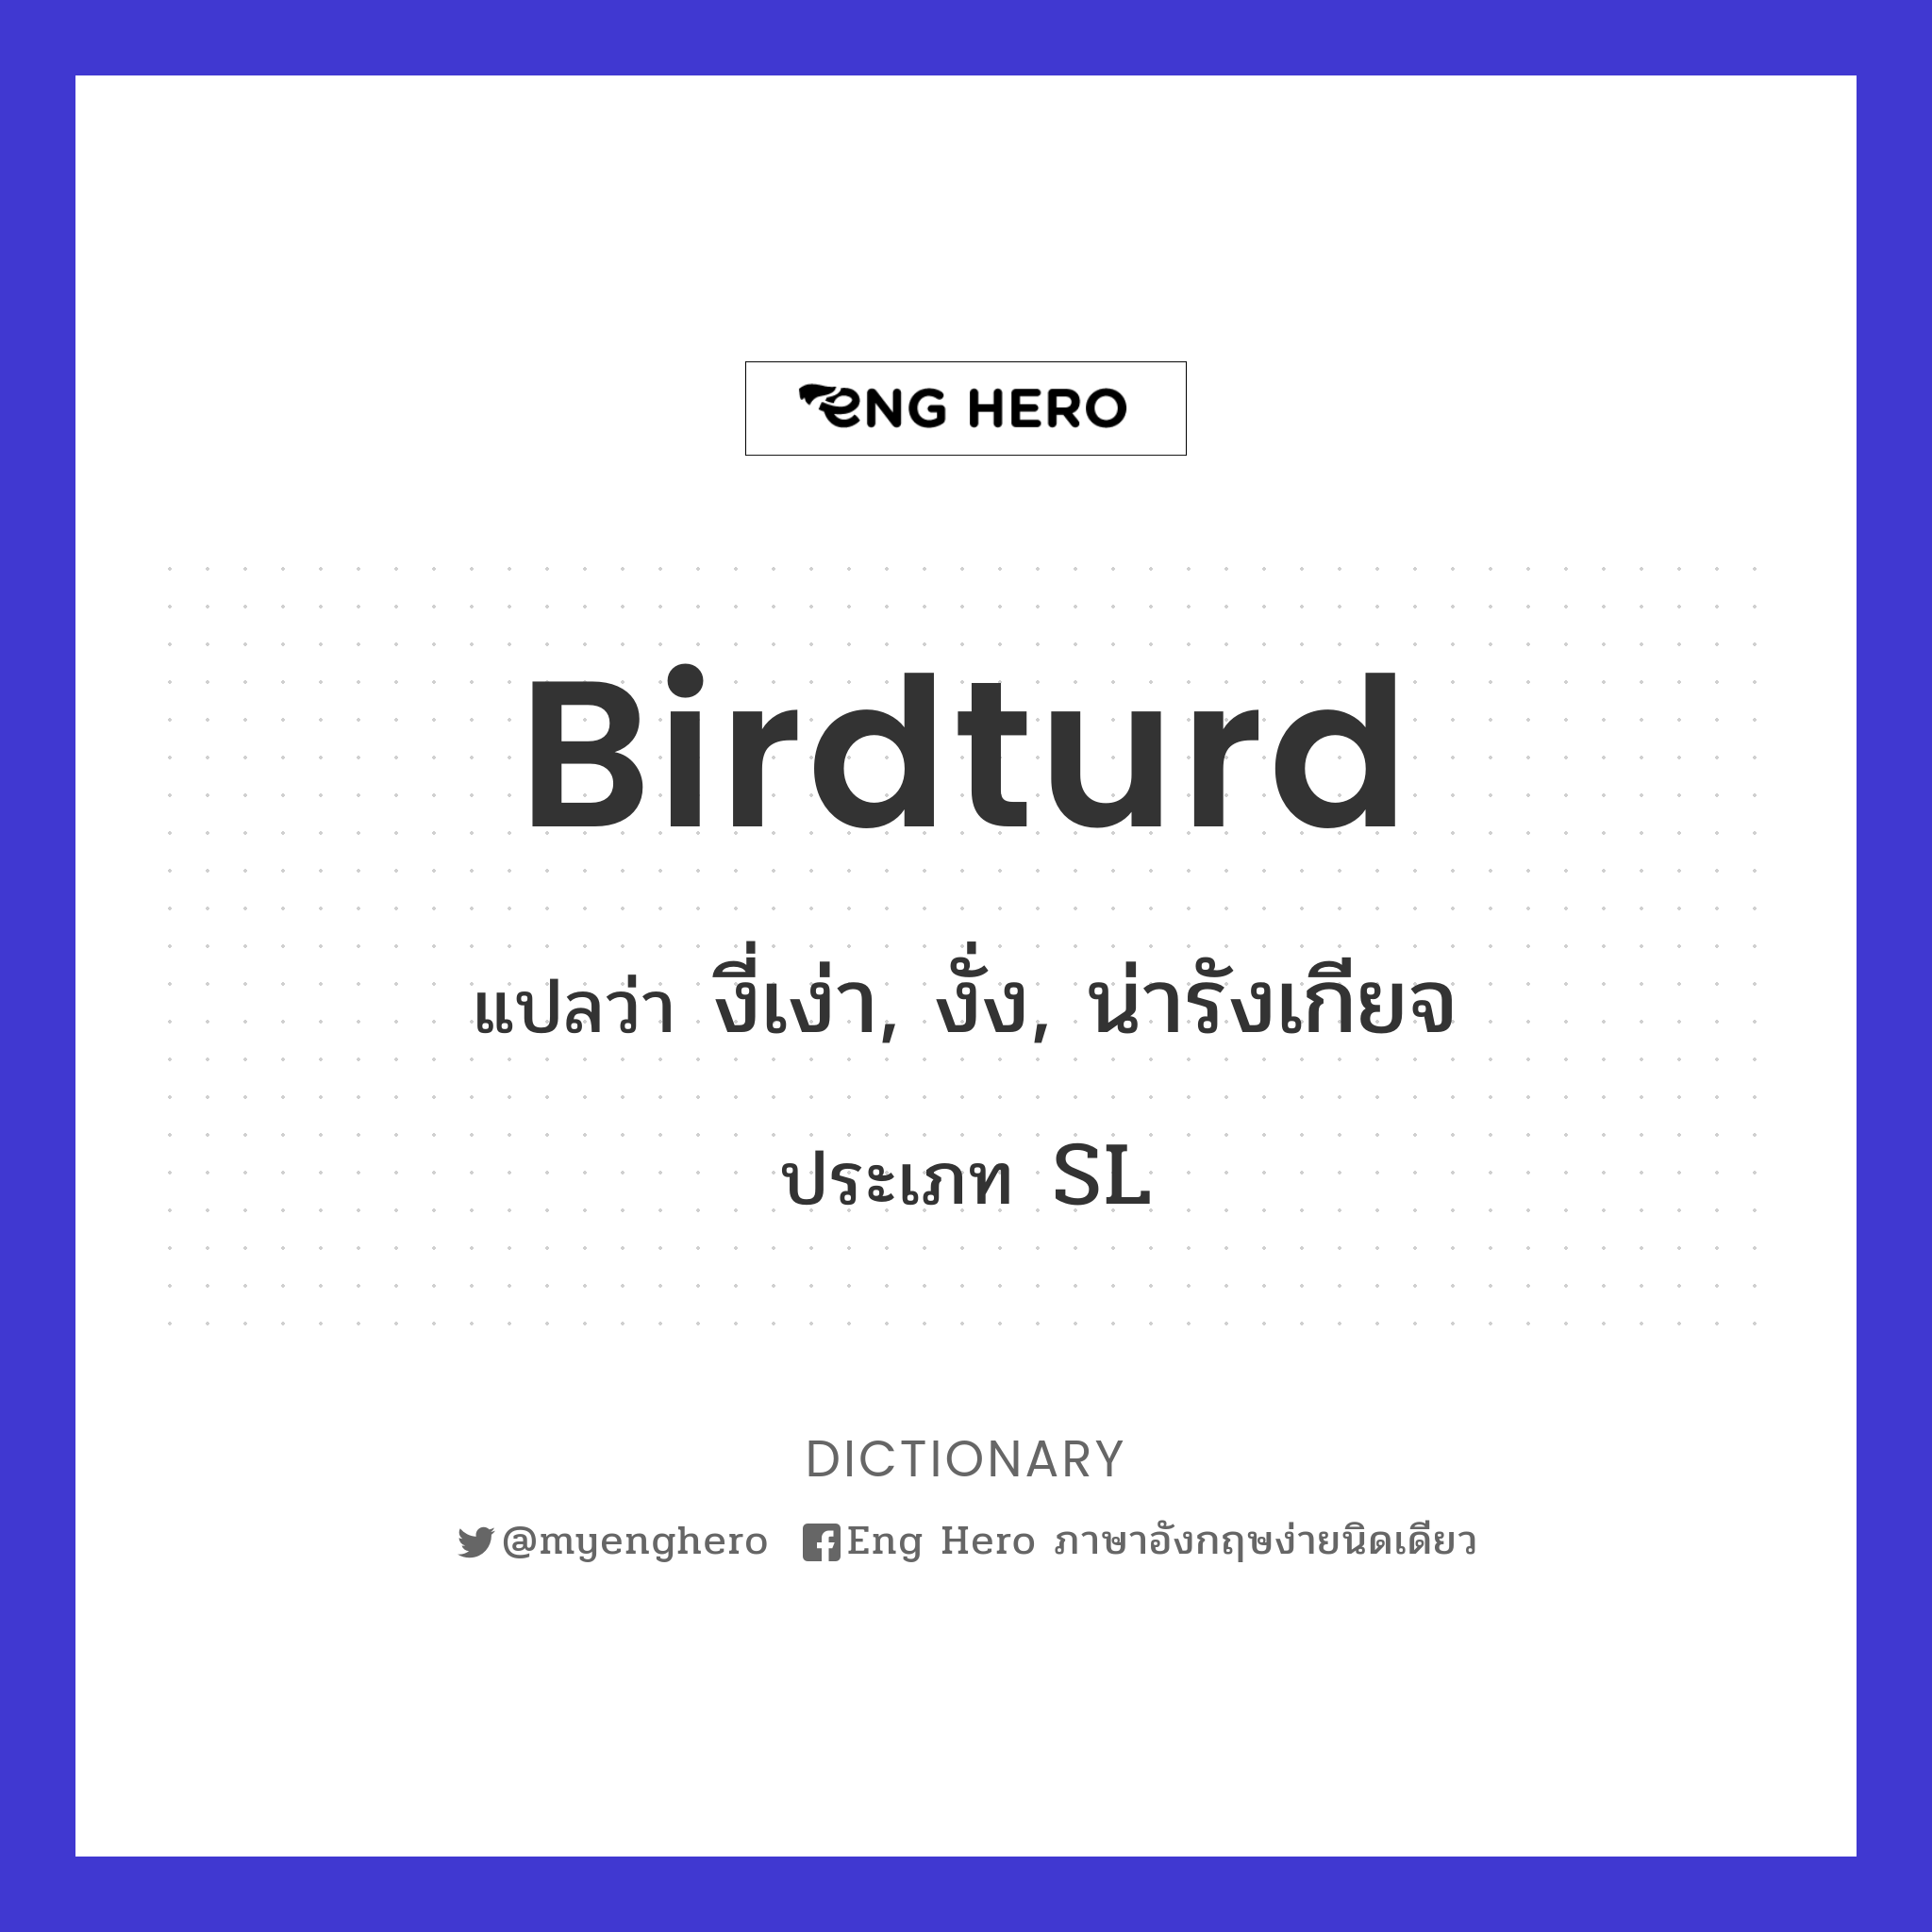 birdturd